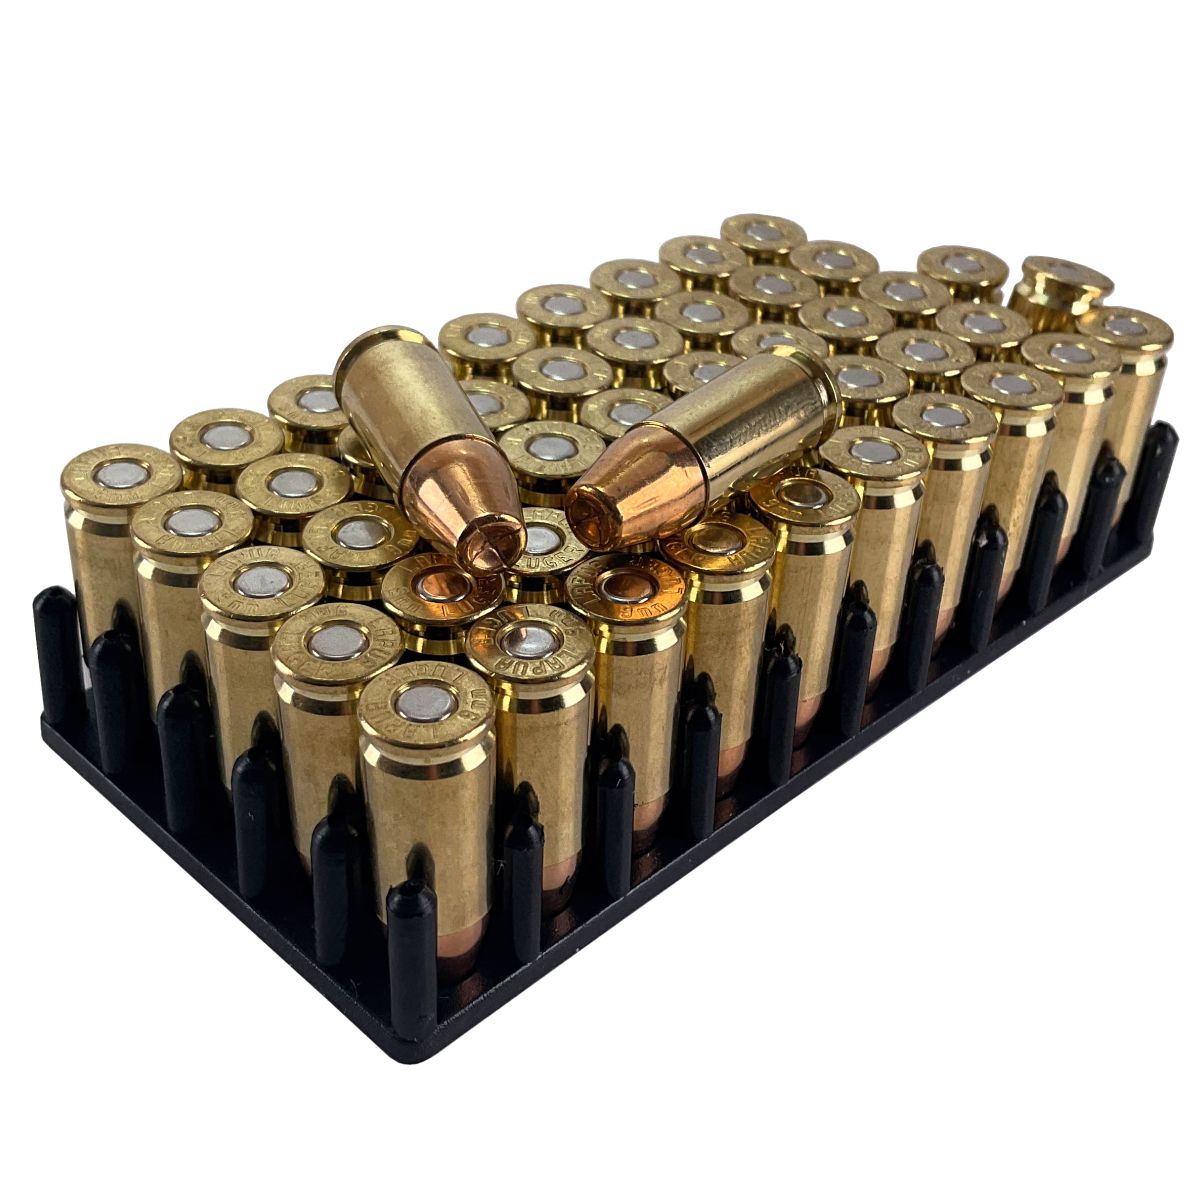 Náboj Lapua 9mm Luger (9x19), 120gr/7,8g, JHP CEPP Extra